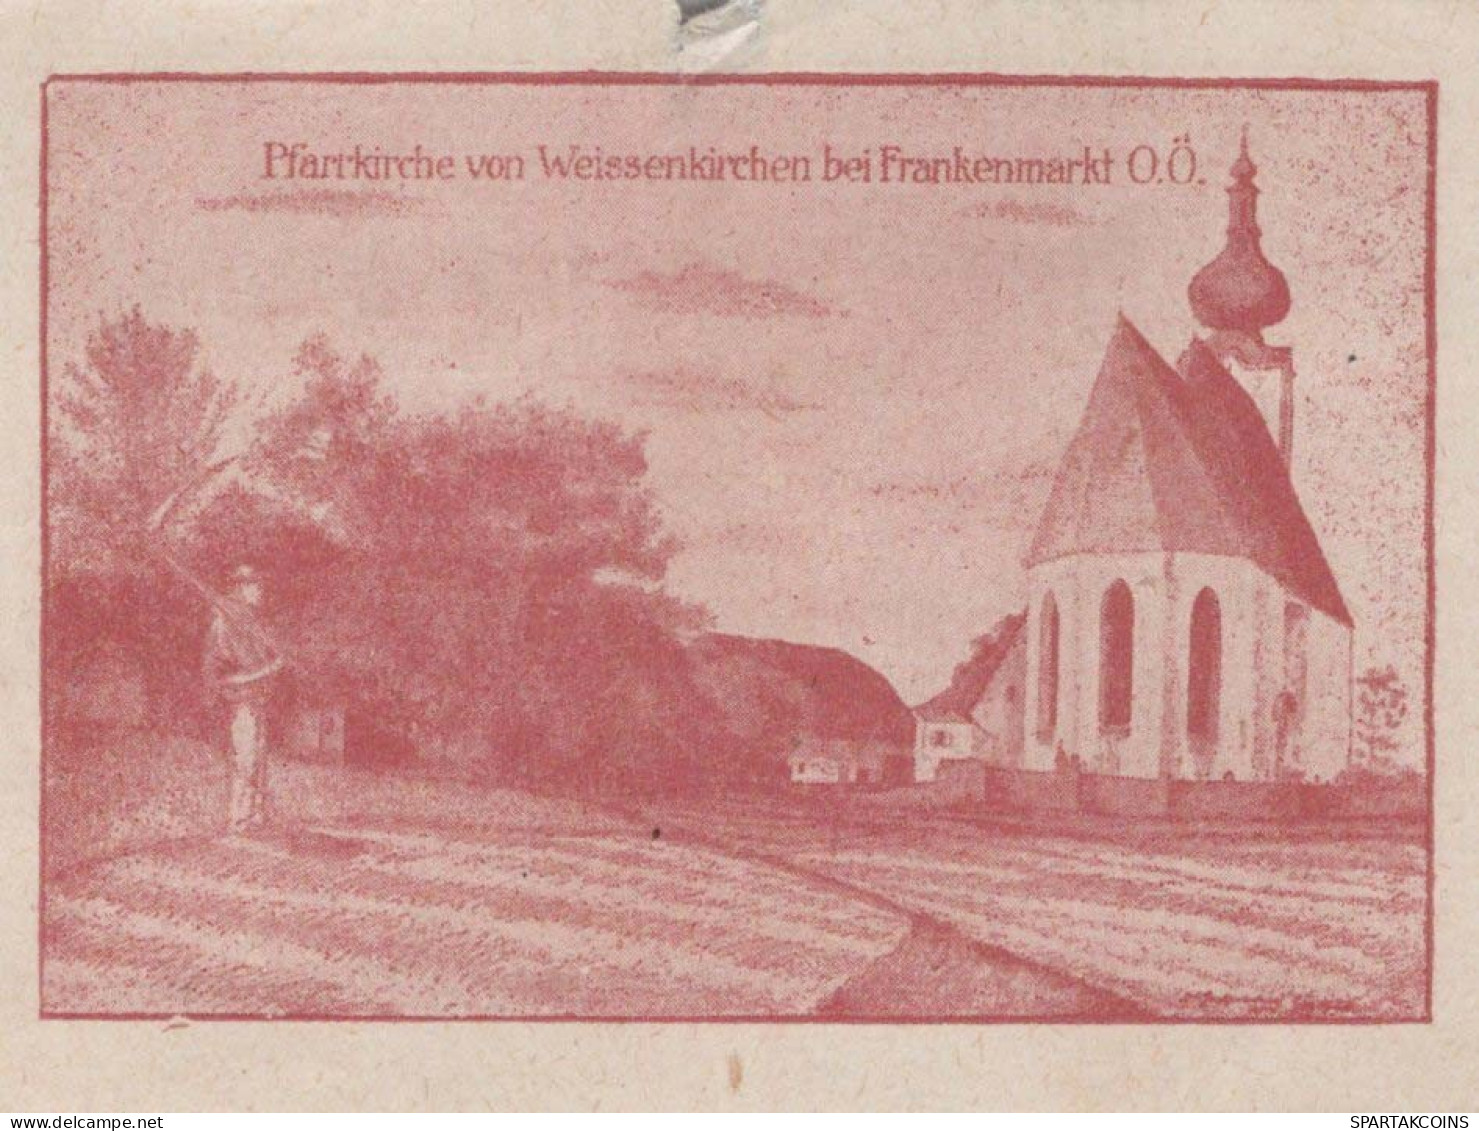 20 HELLER 1920 WEISSENKIRCHEN BEI FRANKENMARKT Oberösterreich Österreich #PI394 - [11] Local Banknote Issues